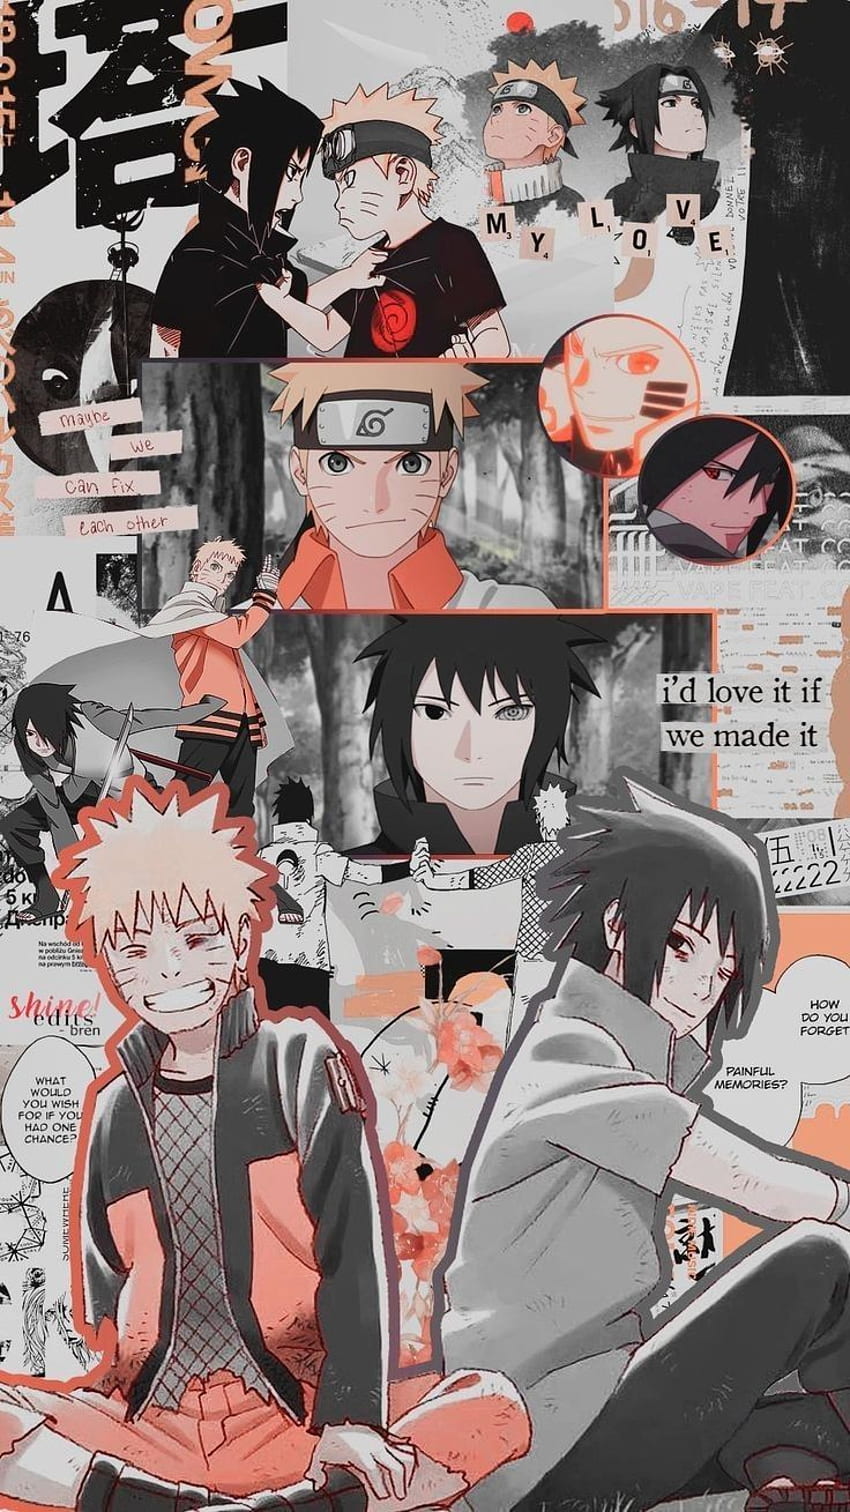 Bạn có yêu thích những nhân vật trong Naruto lẫn Sasuke không? Nếu có, hãy truy cập ngay vào hình nền Naruto Sasuke anime! Hồi tưởng về những khoảnh khắc đáng nhớ giữa Naruto và Sasuke, từ những trận chiến đầy kịch tính đến những lúc đang bên nhau cùng học ở trường ninja. Hãy để những khoảnh khắc đó luôn sống động trong tâm trí bạn với hình nền này.